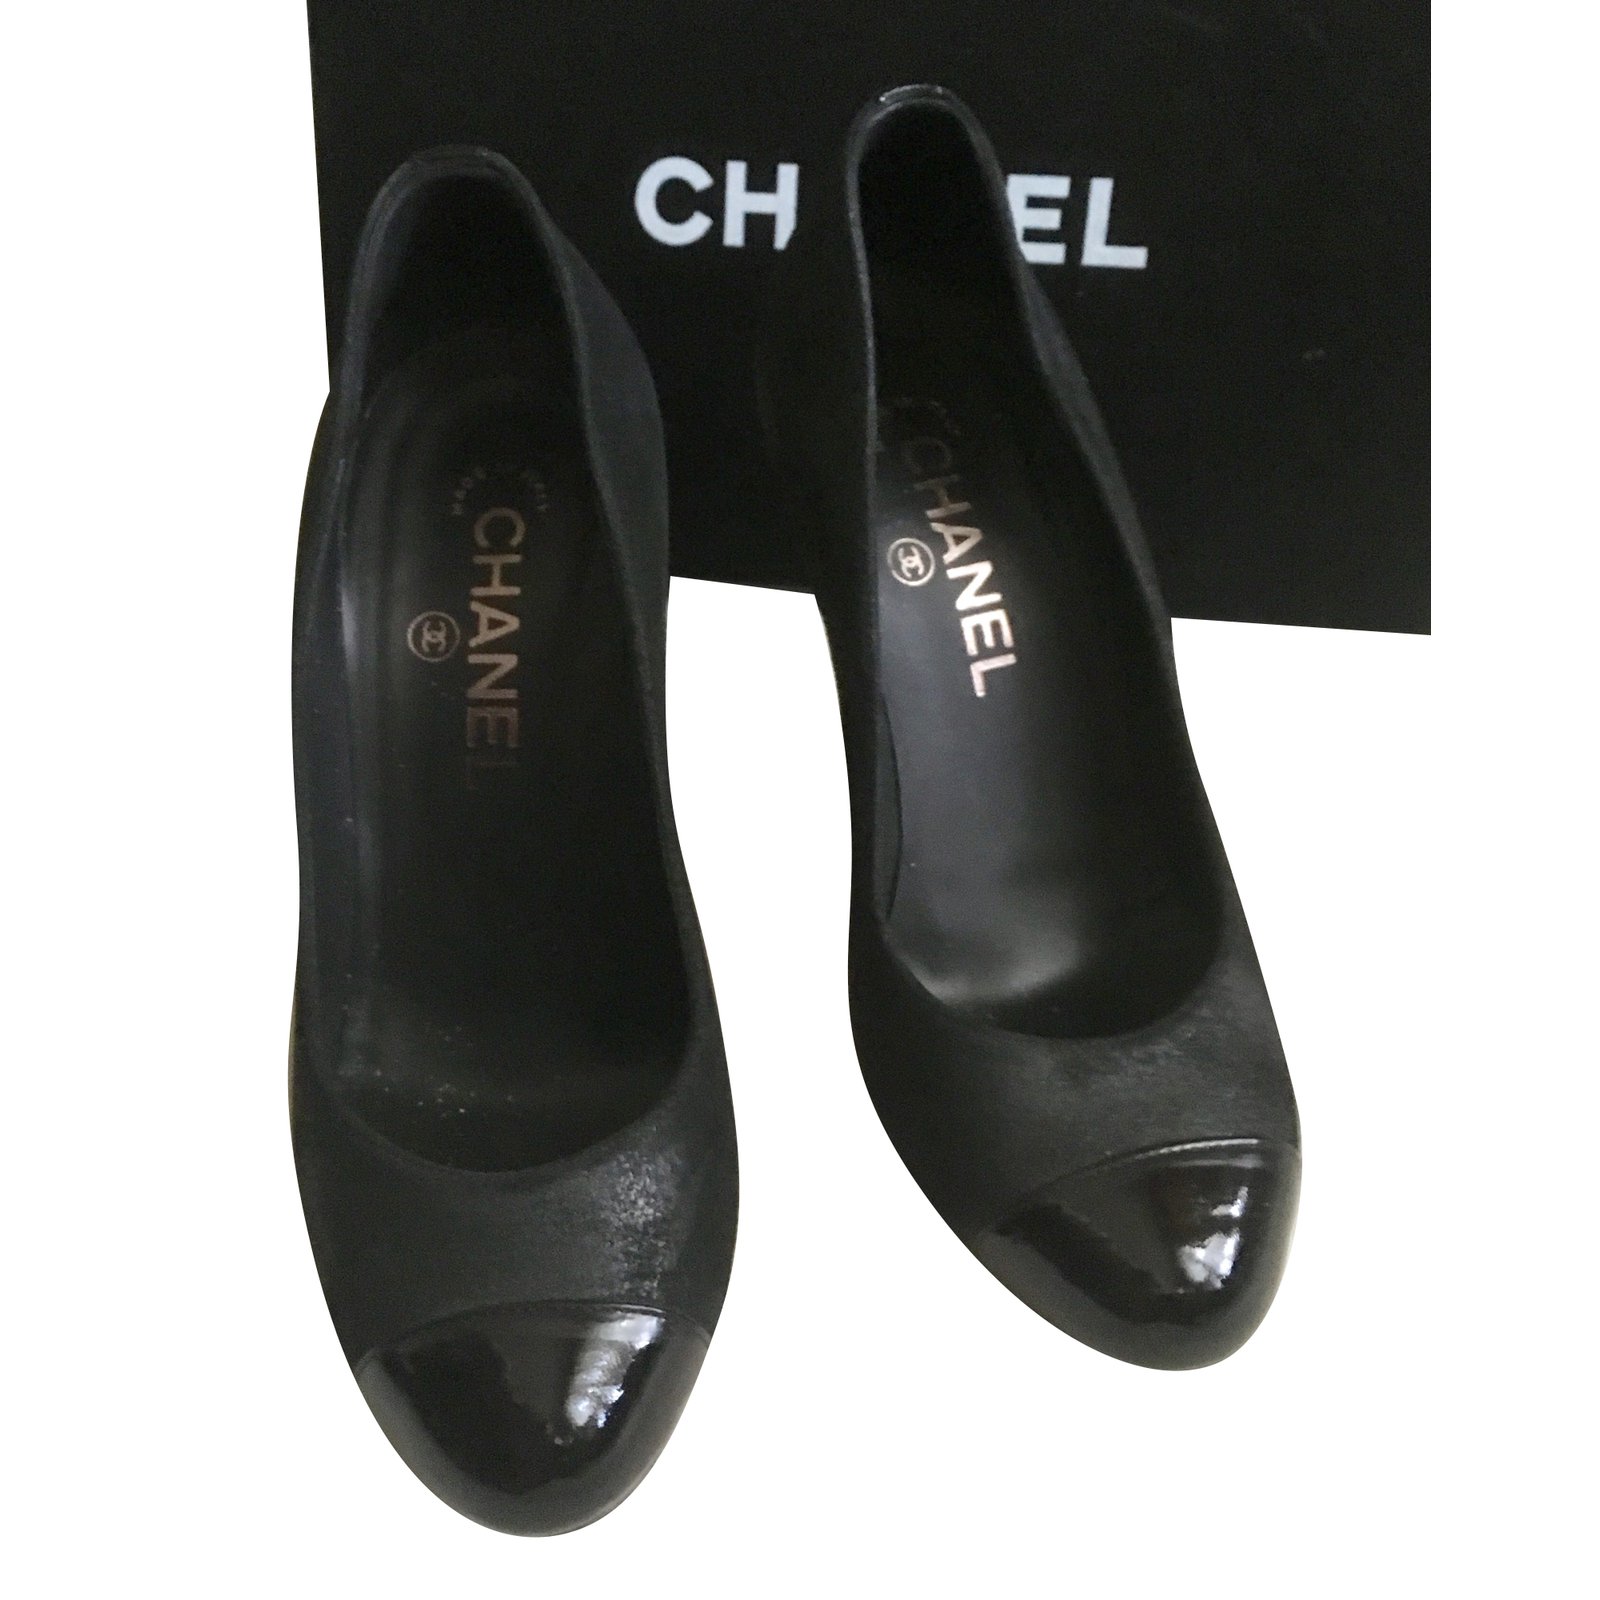 Chanel Pumps with high heels Heels 